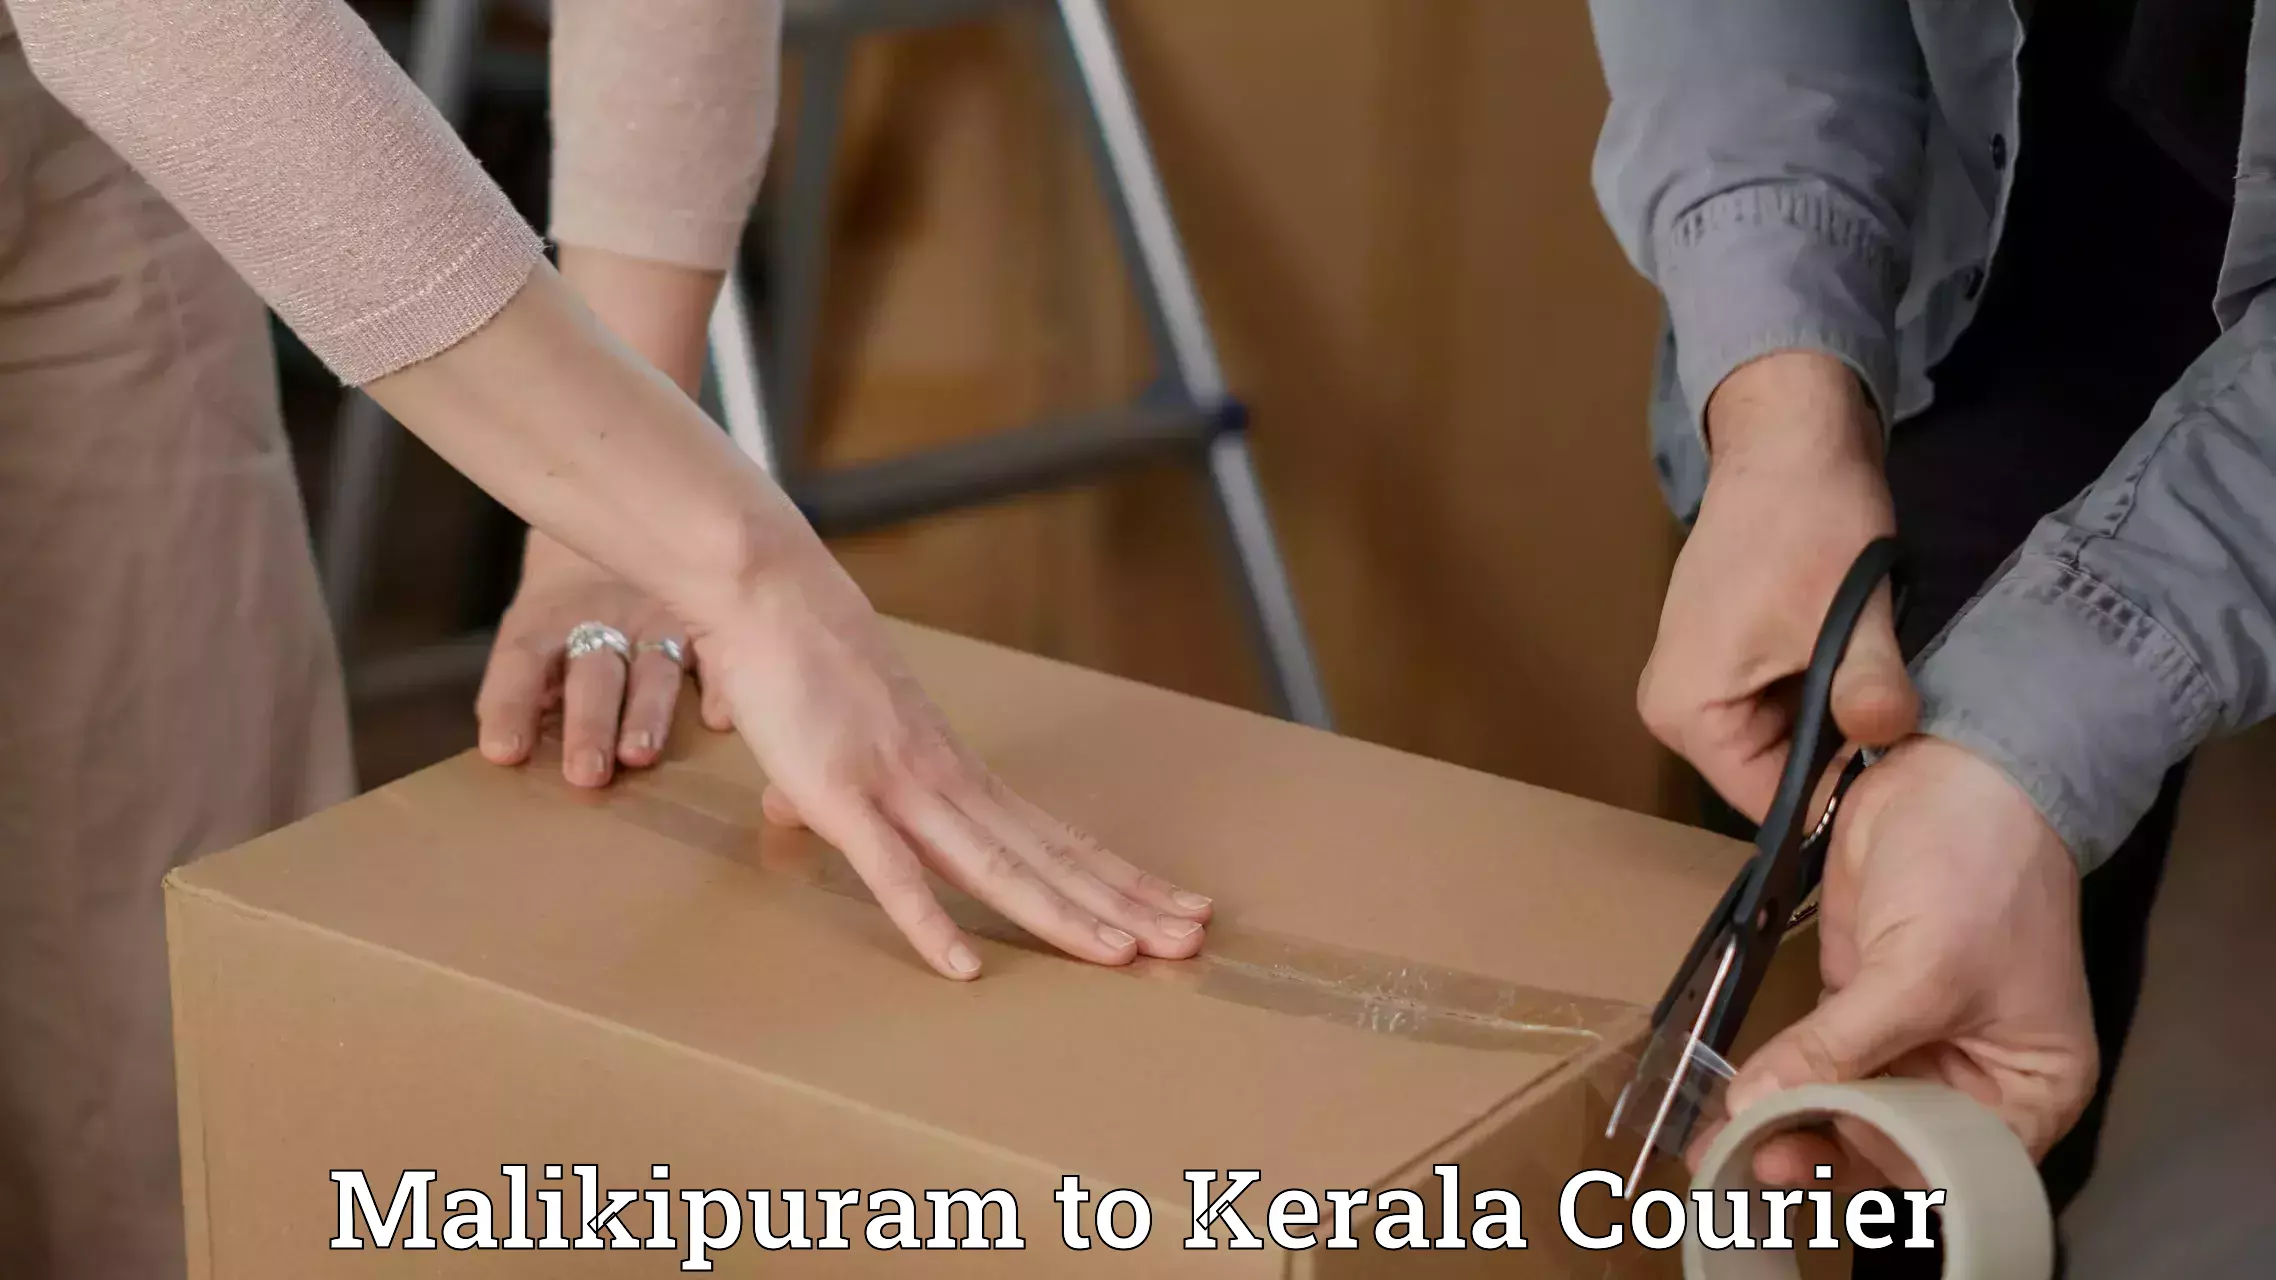 Urgent courier needs Malikipuram to Pallikkara